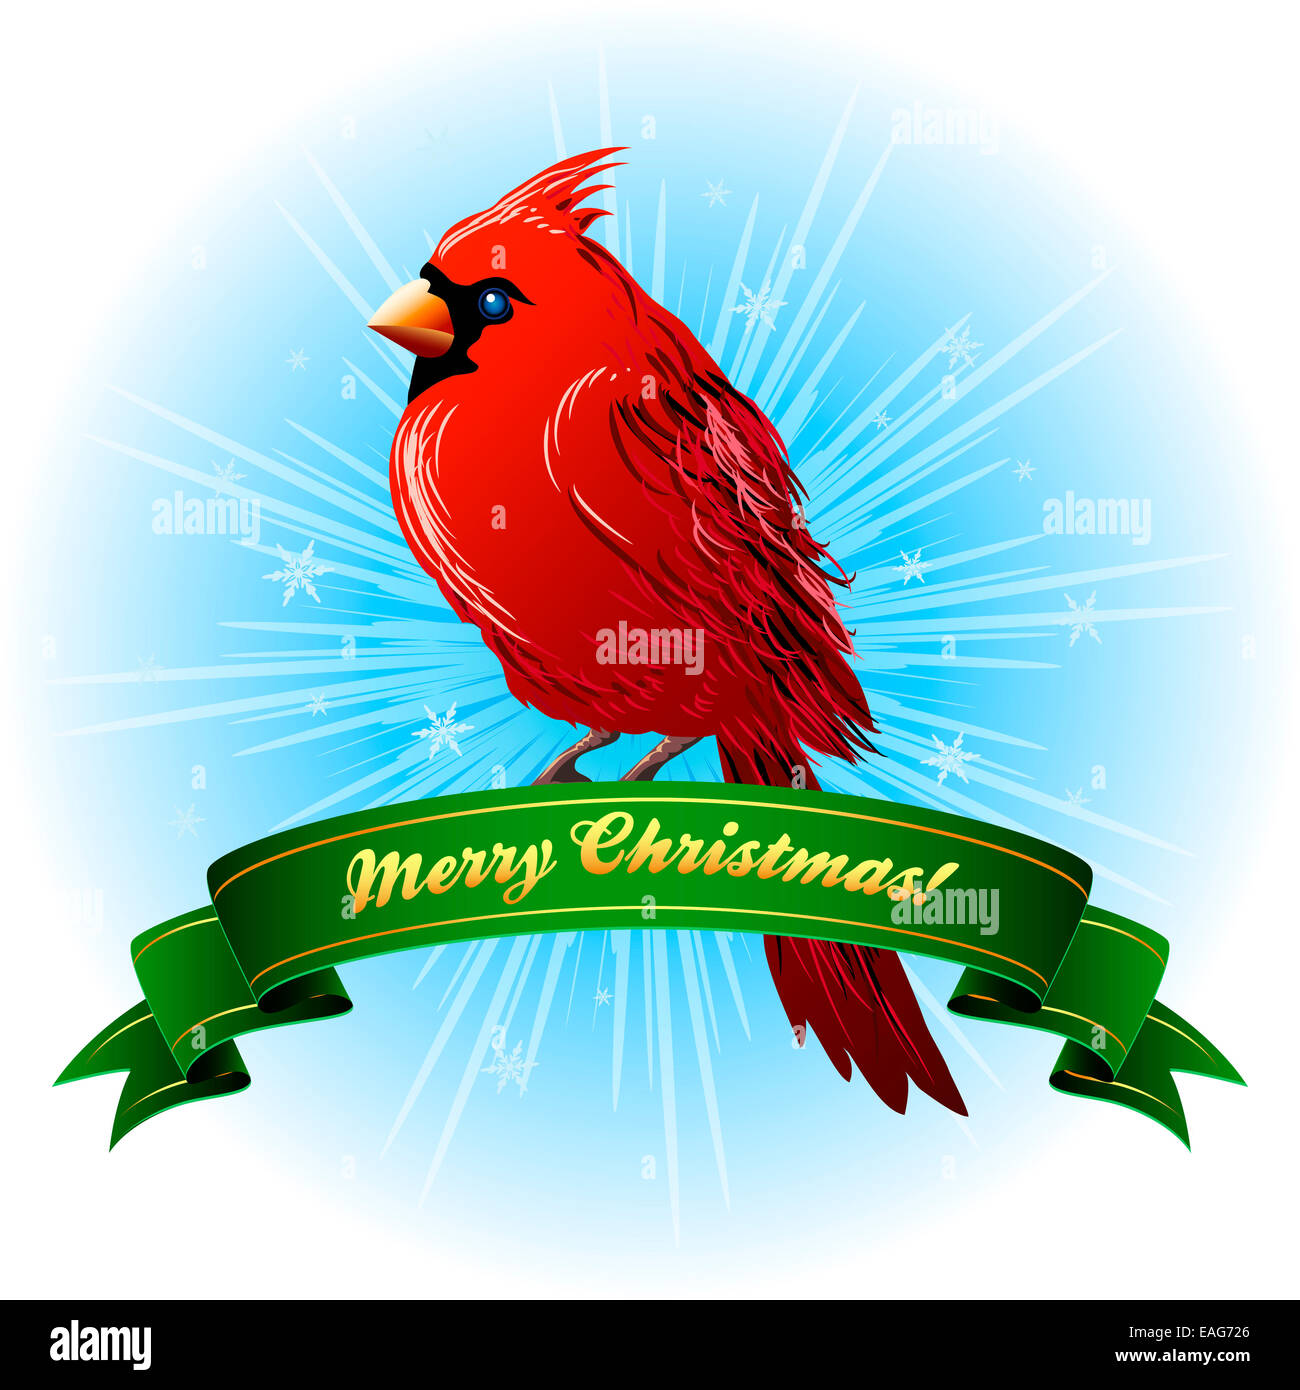 Christmas Frame with northern cardinal Stock Photo